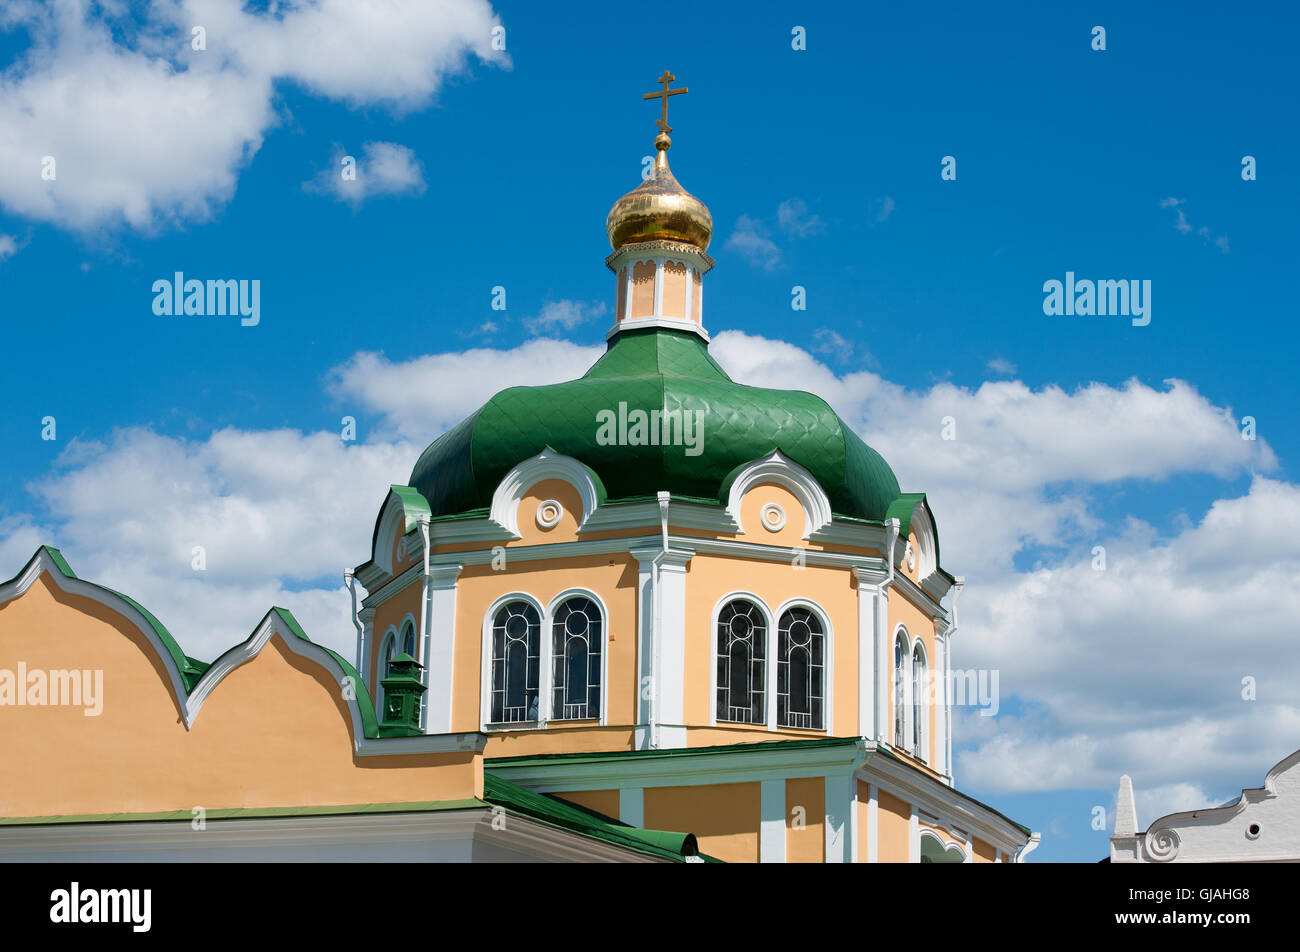 La cathédrale de la Nativité et de l'archevêque construction de Ryazan Kremlin, Russie Banque D'Images